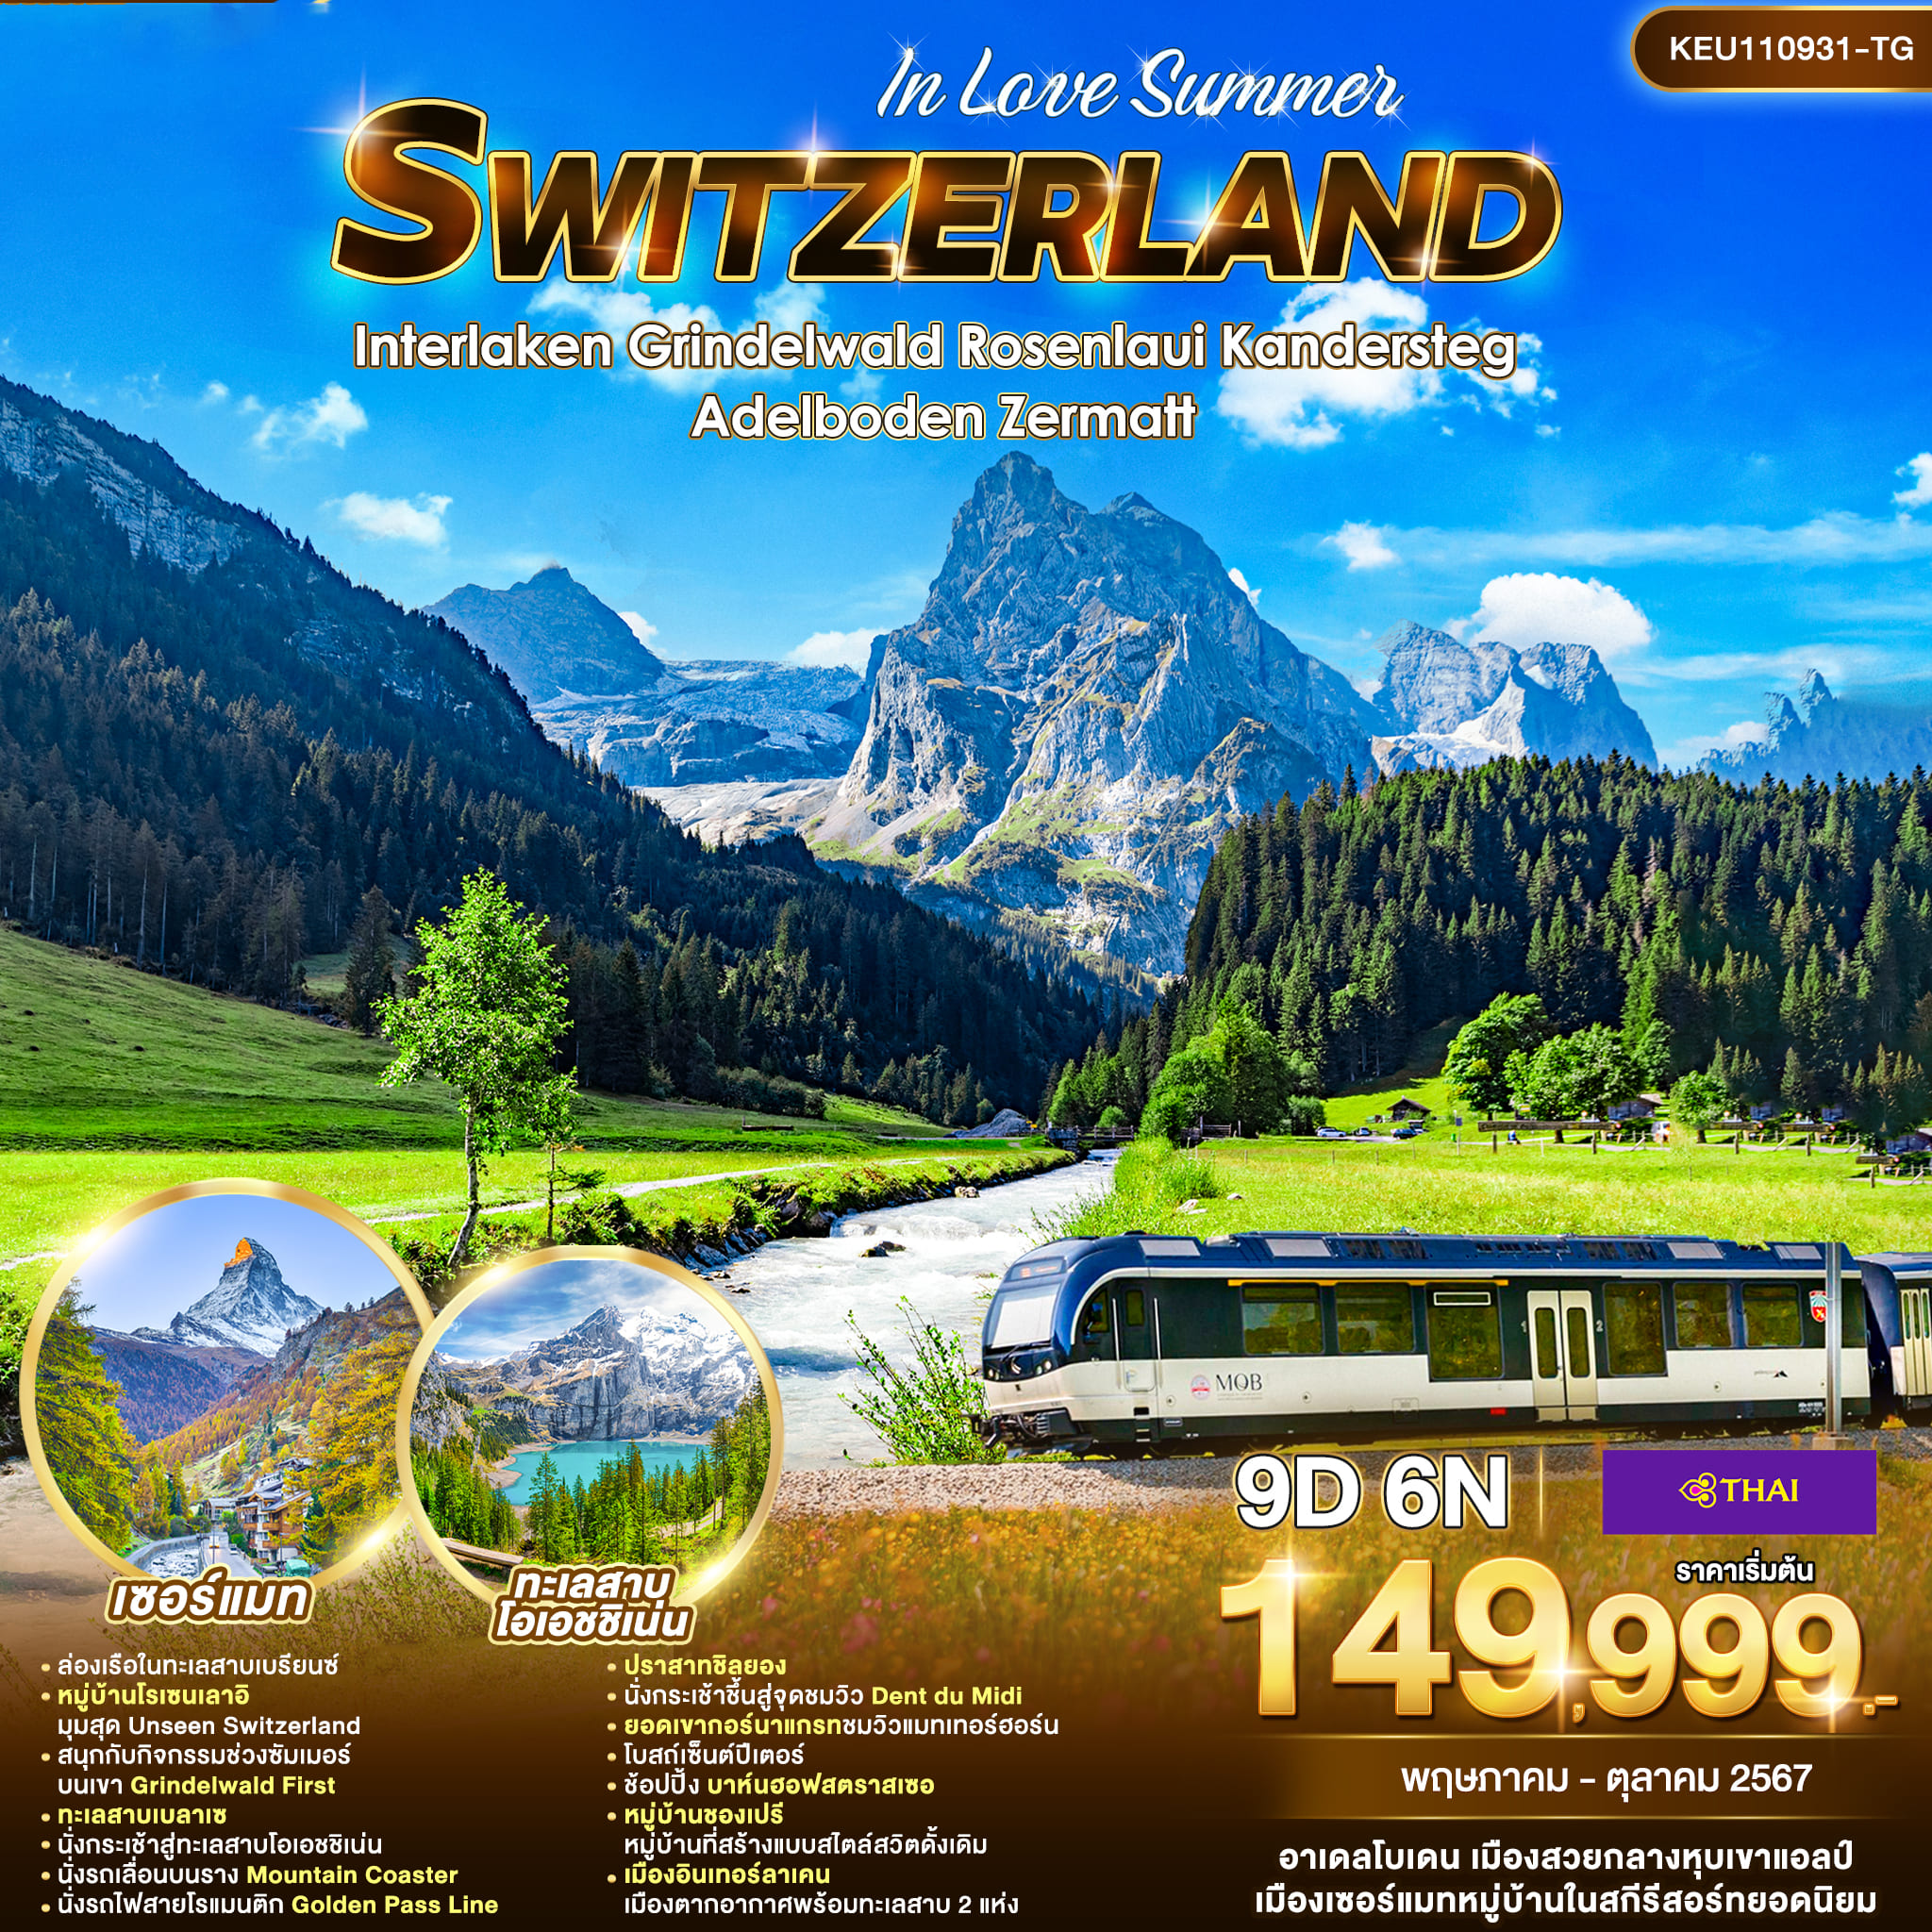 ทัวร์สวิตเซอร์เเลนด์ SWITZERLAND IN LOVE SUMMER 9วัน 6คืน (TG)